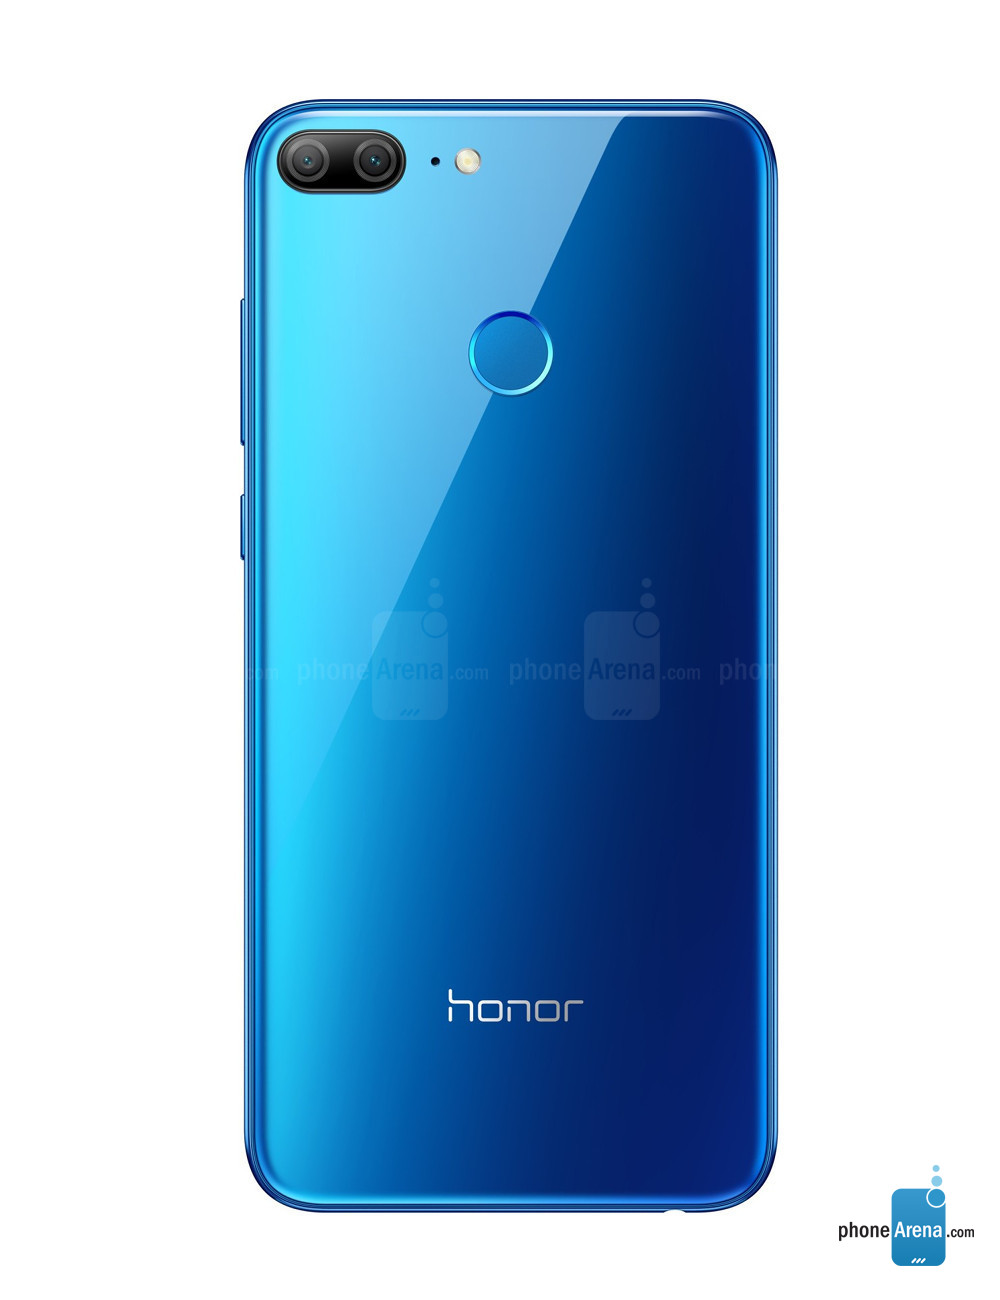 بررسی مشخصه های گوشی هوشمند Honor 9 Lite